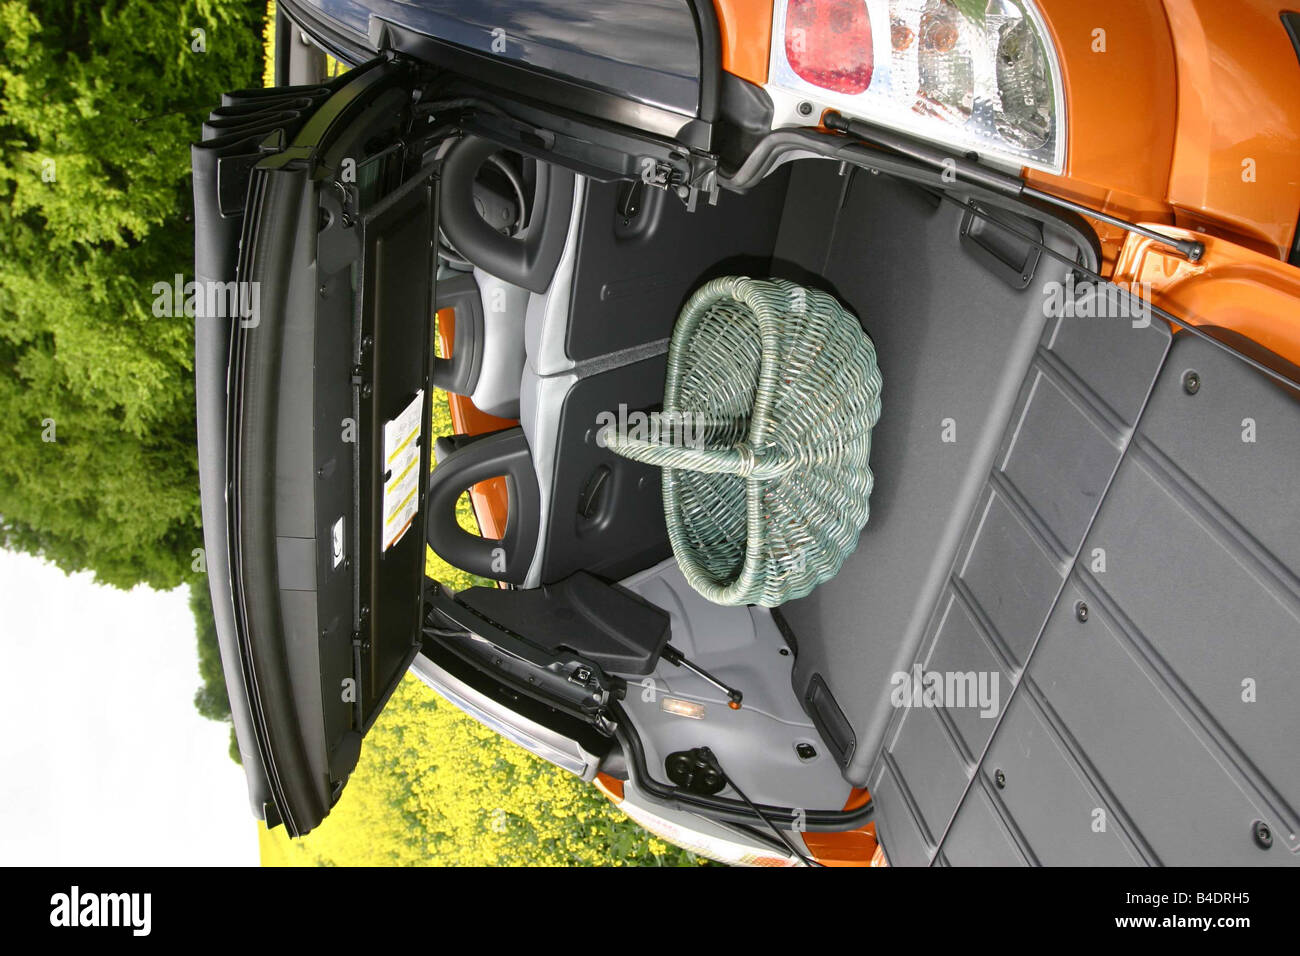 Auto, Citroen C3 Pluriel 1.4, Cabrio, Modell Jahr 2003-orange, oben offen,  Blick ins Boot, Technik/Zubehör, Zubehör Stockfotografie - Alamy